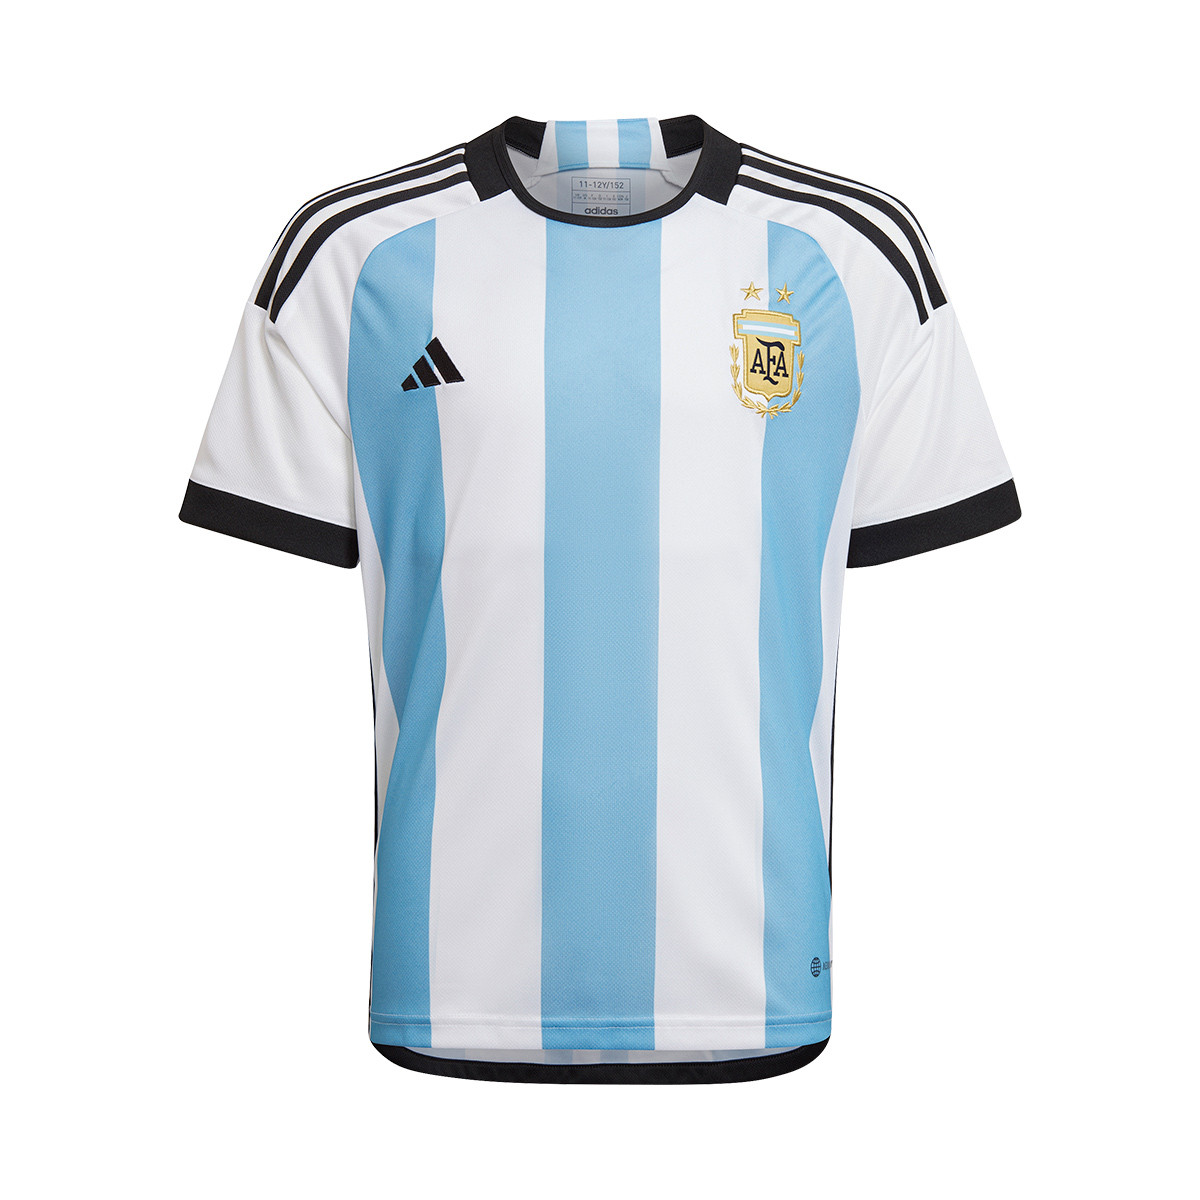 Consigue la camiseta con la que Argentina ganó el mundial de Catar 2022  Y reserva la nueva con las tres estrellas - Showroom